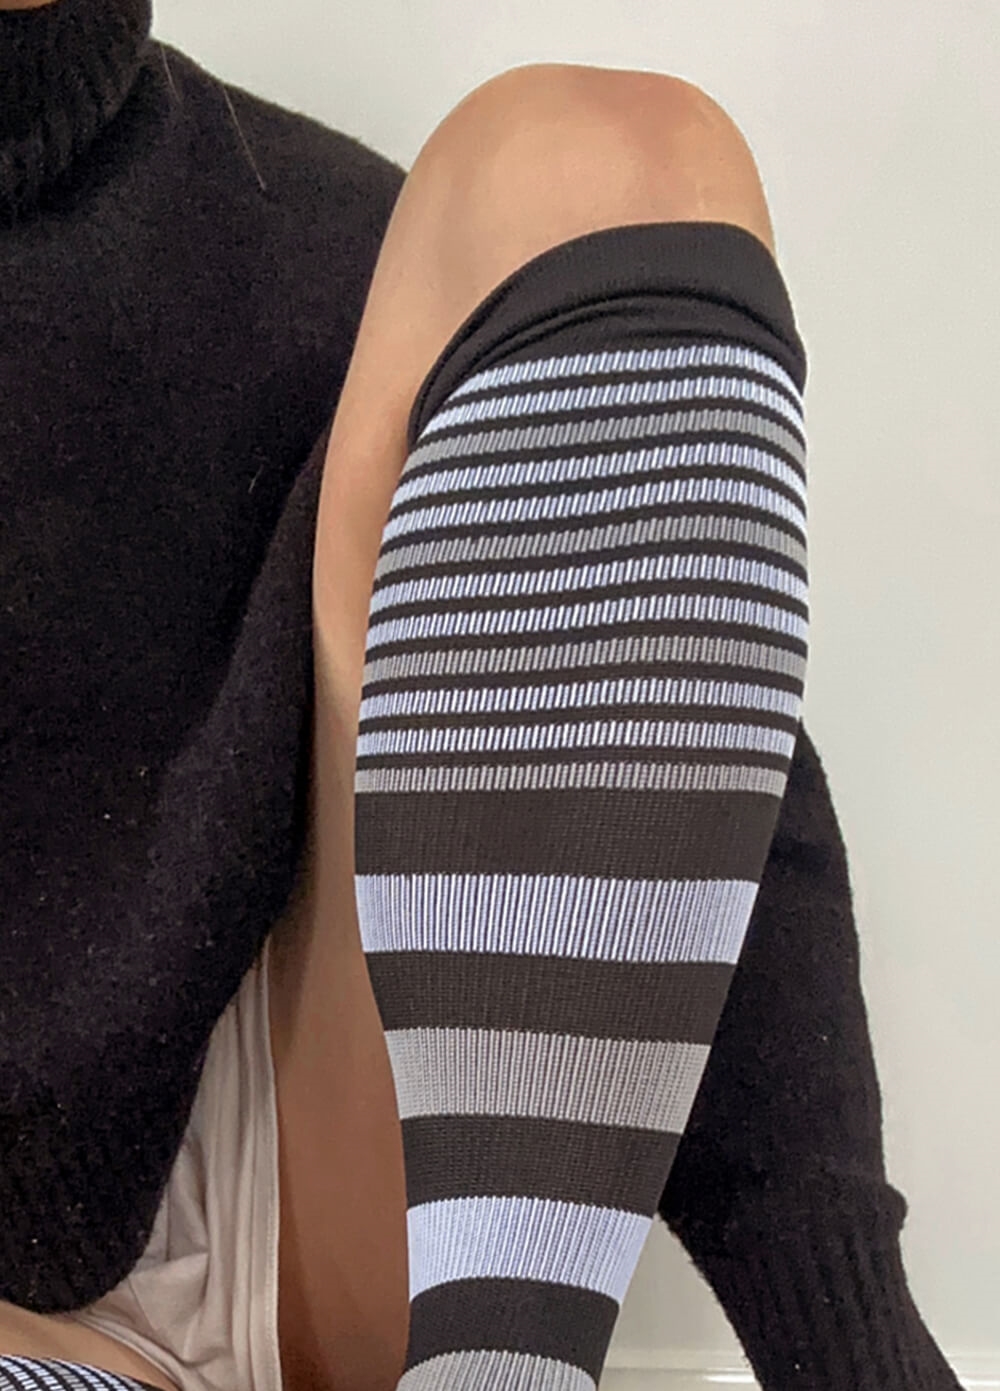 Mama Sox - Delight Maternity Compression Socks in Black Mixed Stripe